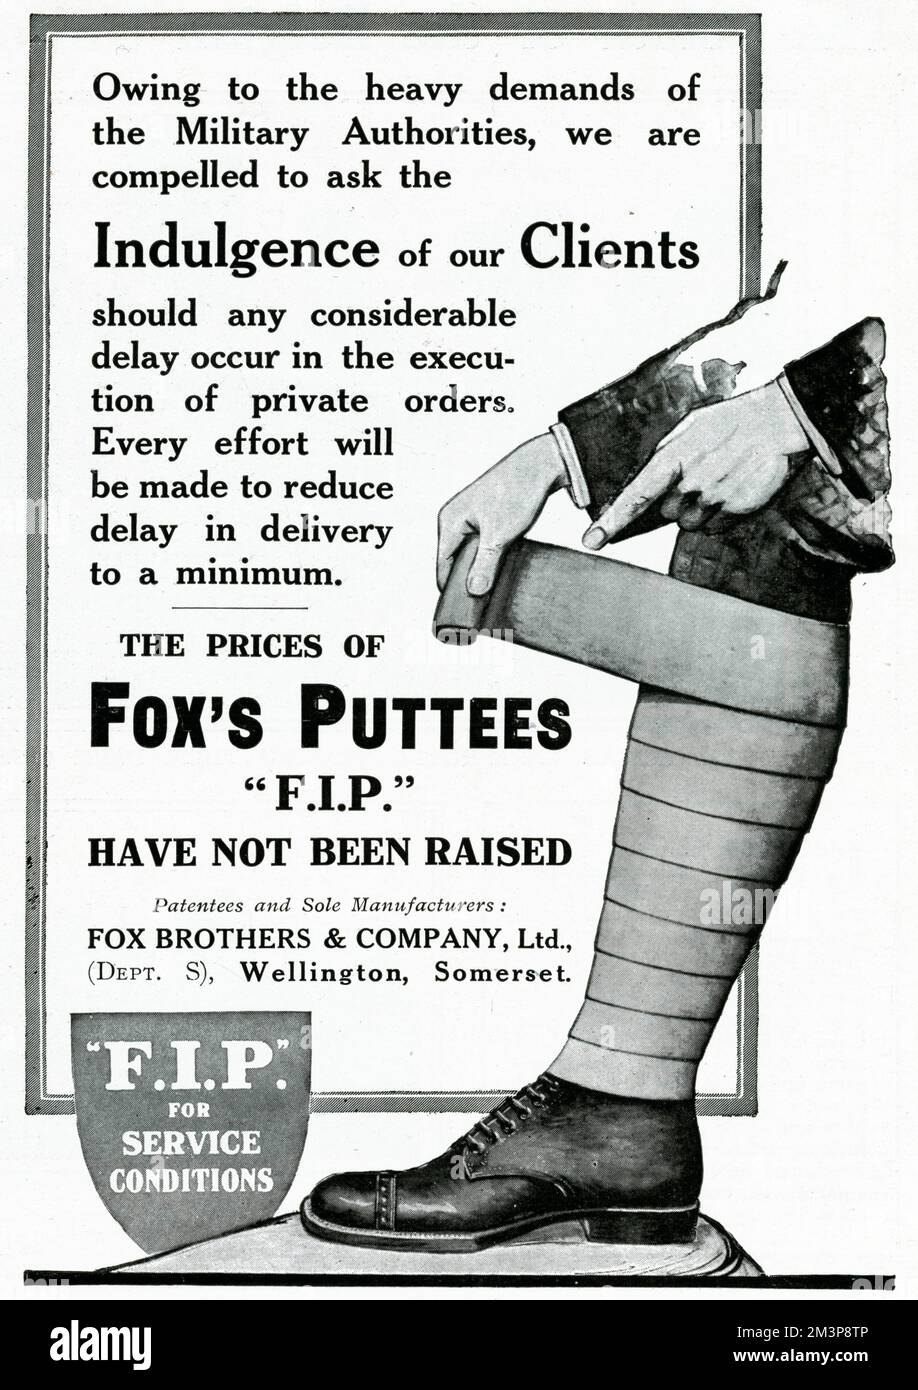 Werbespot für Fox's Puttees im Jahr 1914, in dem er darum bittet, Privatkunden zu verwöhnen, falls es aufgrund der hohen Anforderungen der Militärbehörden zu Verzögerungen bei der Lieferung kommt. Datum: 1914 Stockfoto